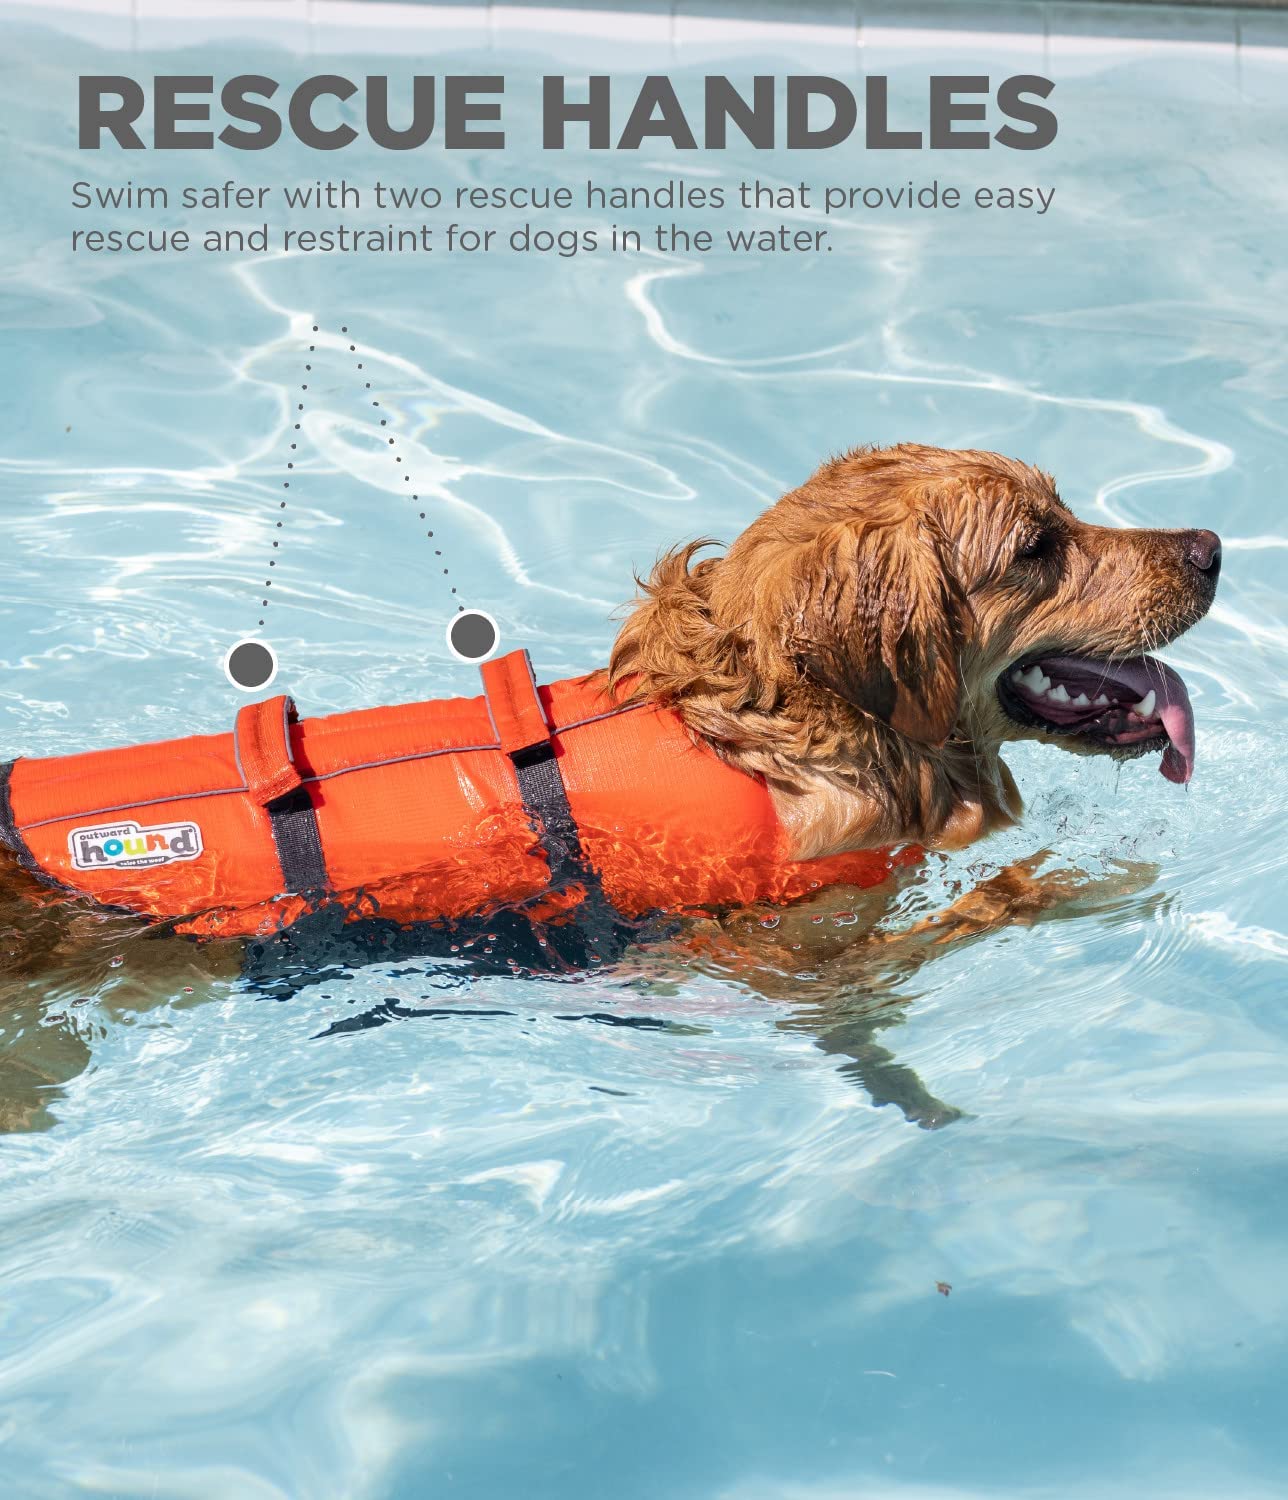  شناور جلوی گردن کمک می کند سر سگ شما را بالاتر از آب نگه دارد، چه یک شناگر تازه کار یا با تجربه باشد.